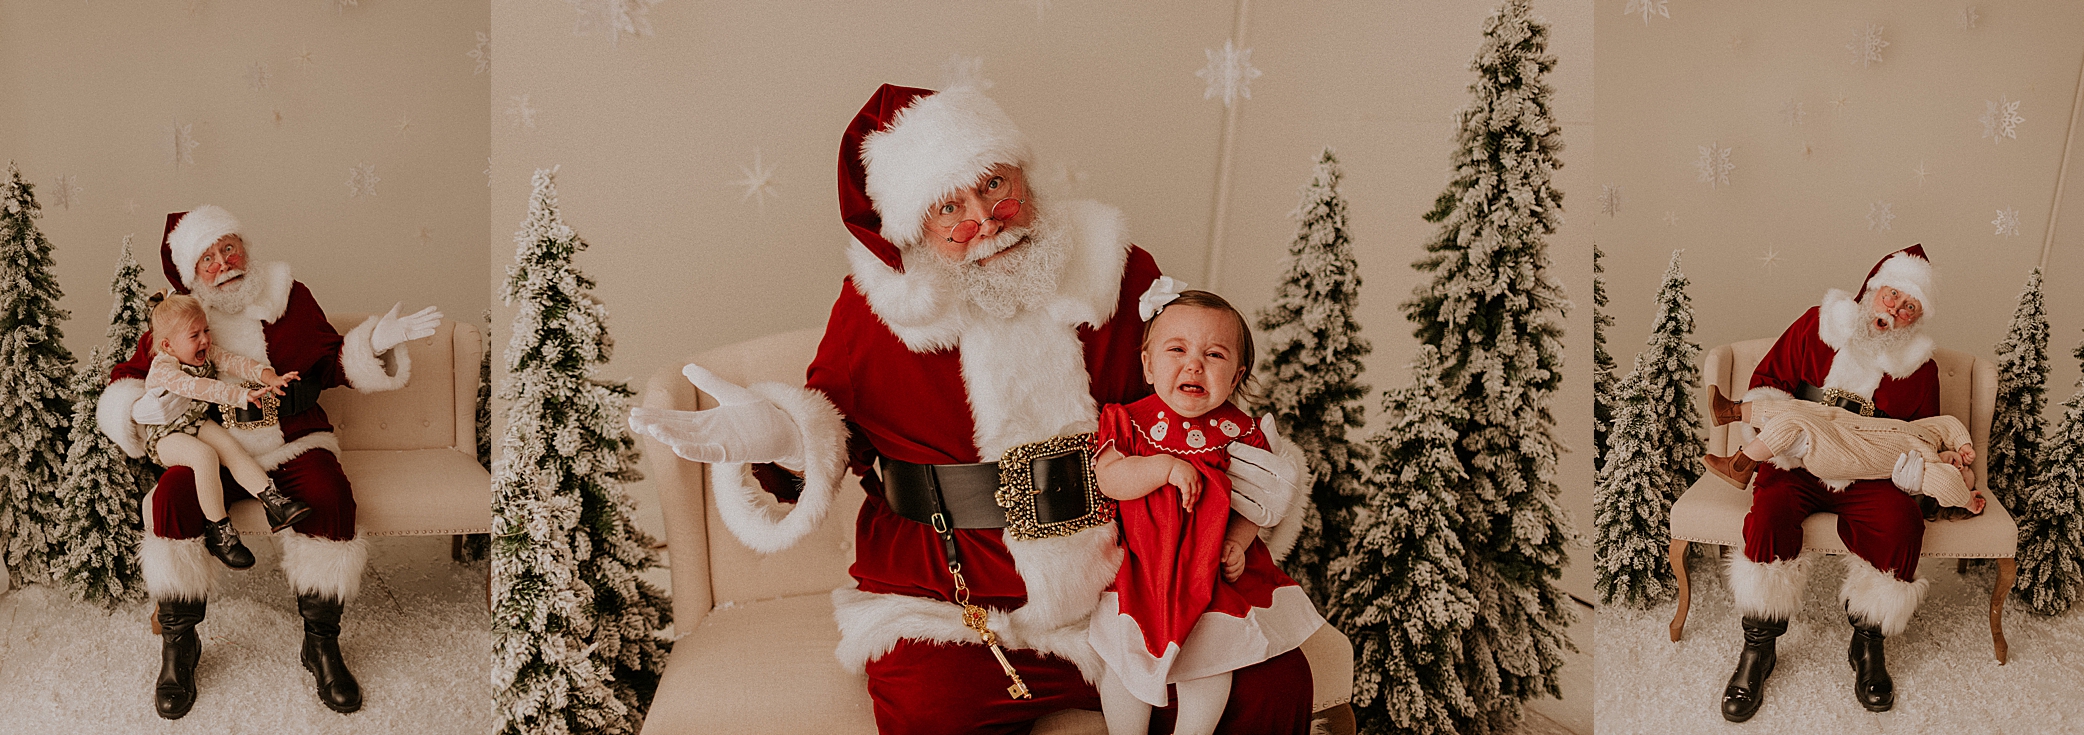 crying baby with Santa